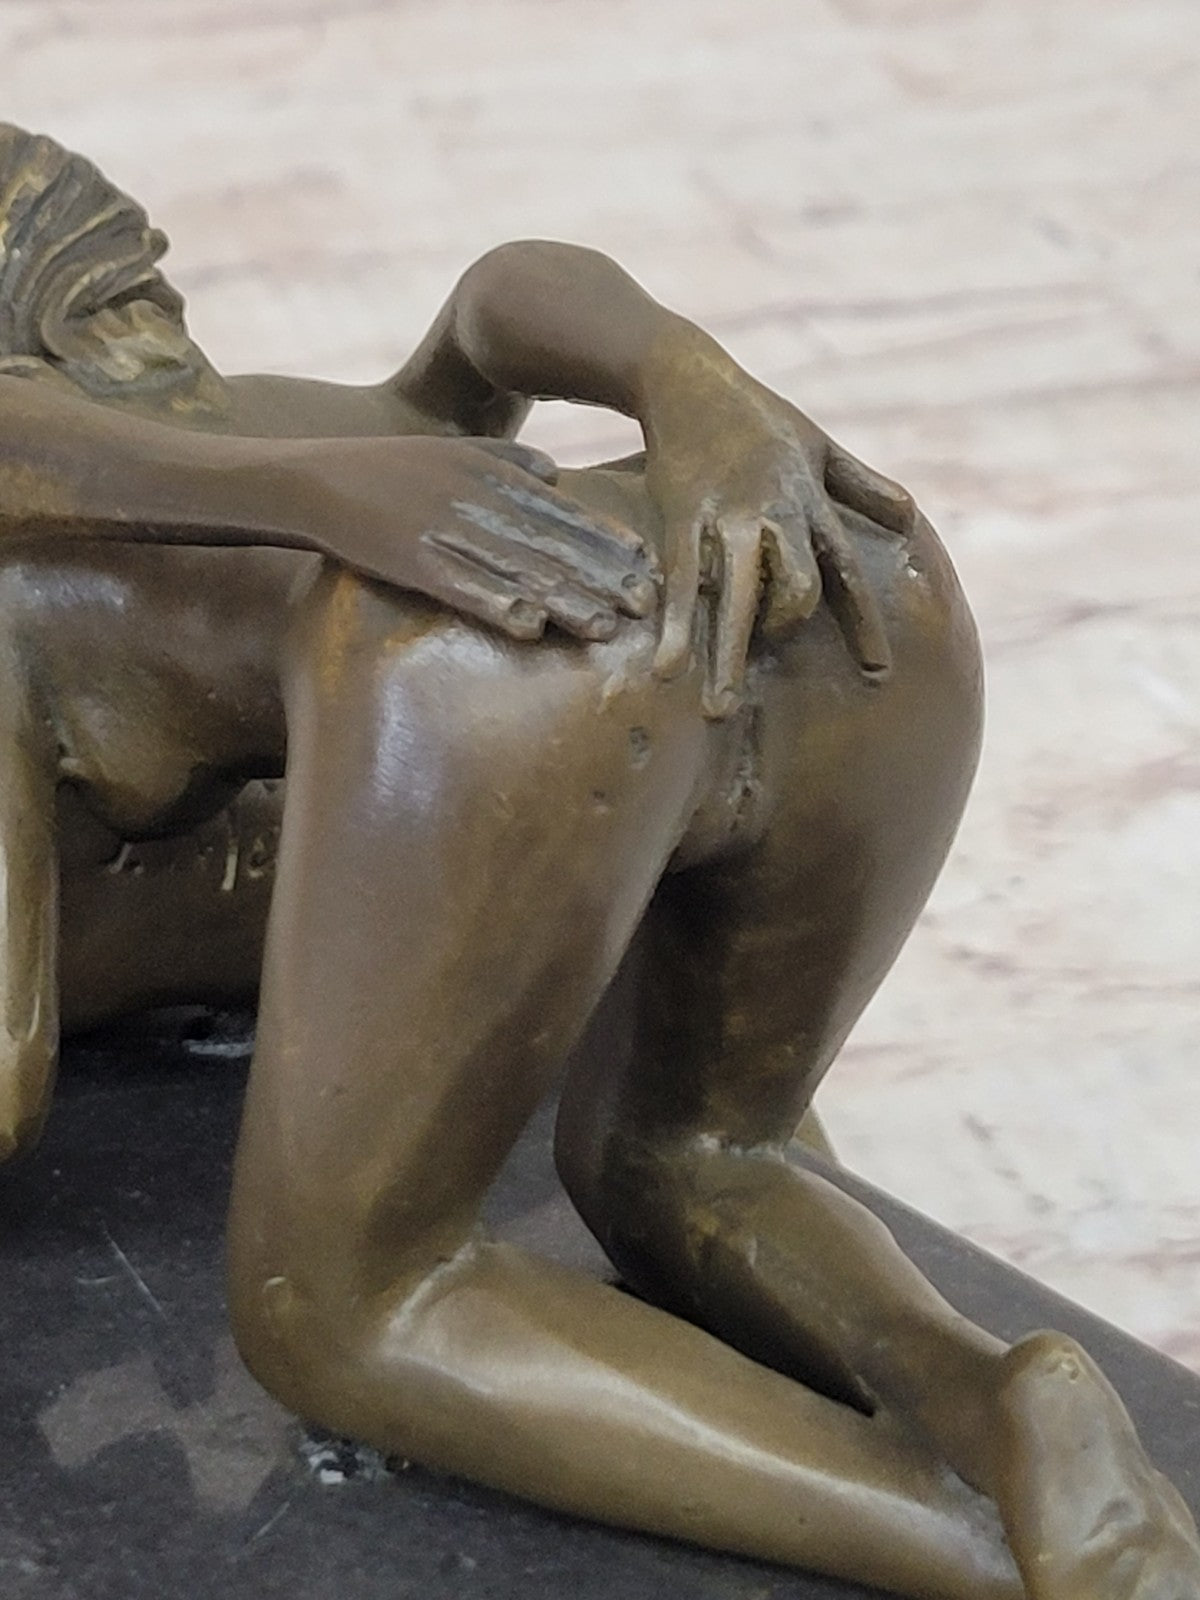 J. Mavchi Nude Erotic Male and Female Duo Couple Bronze Sculpture Art Deco Figure